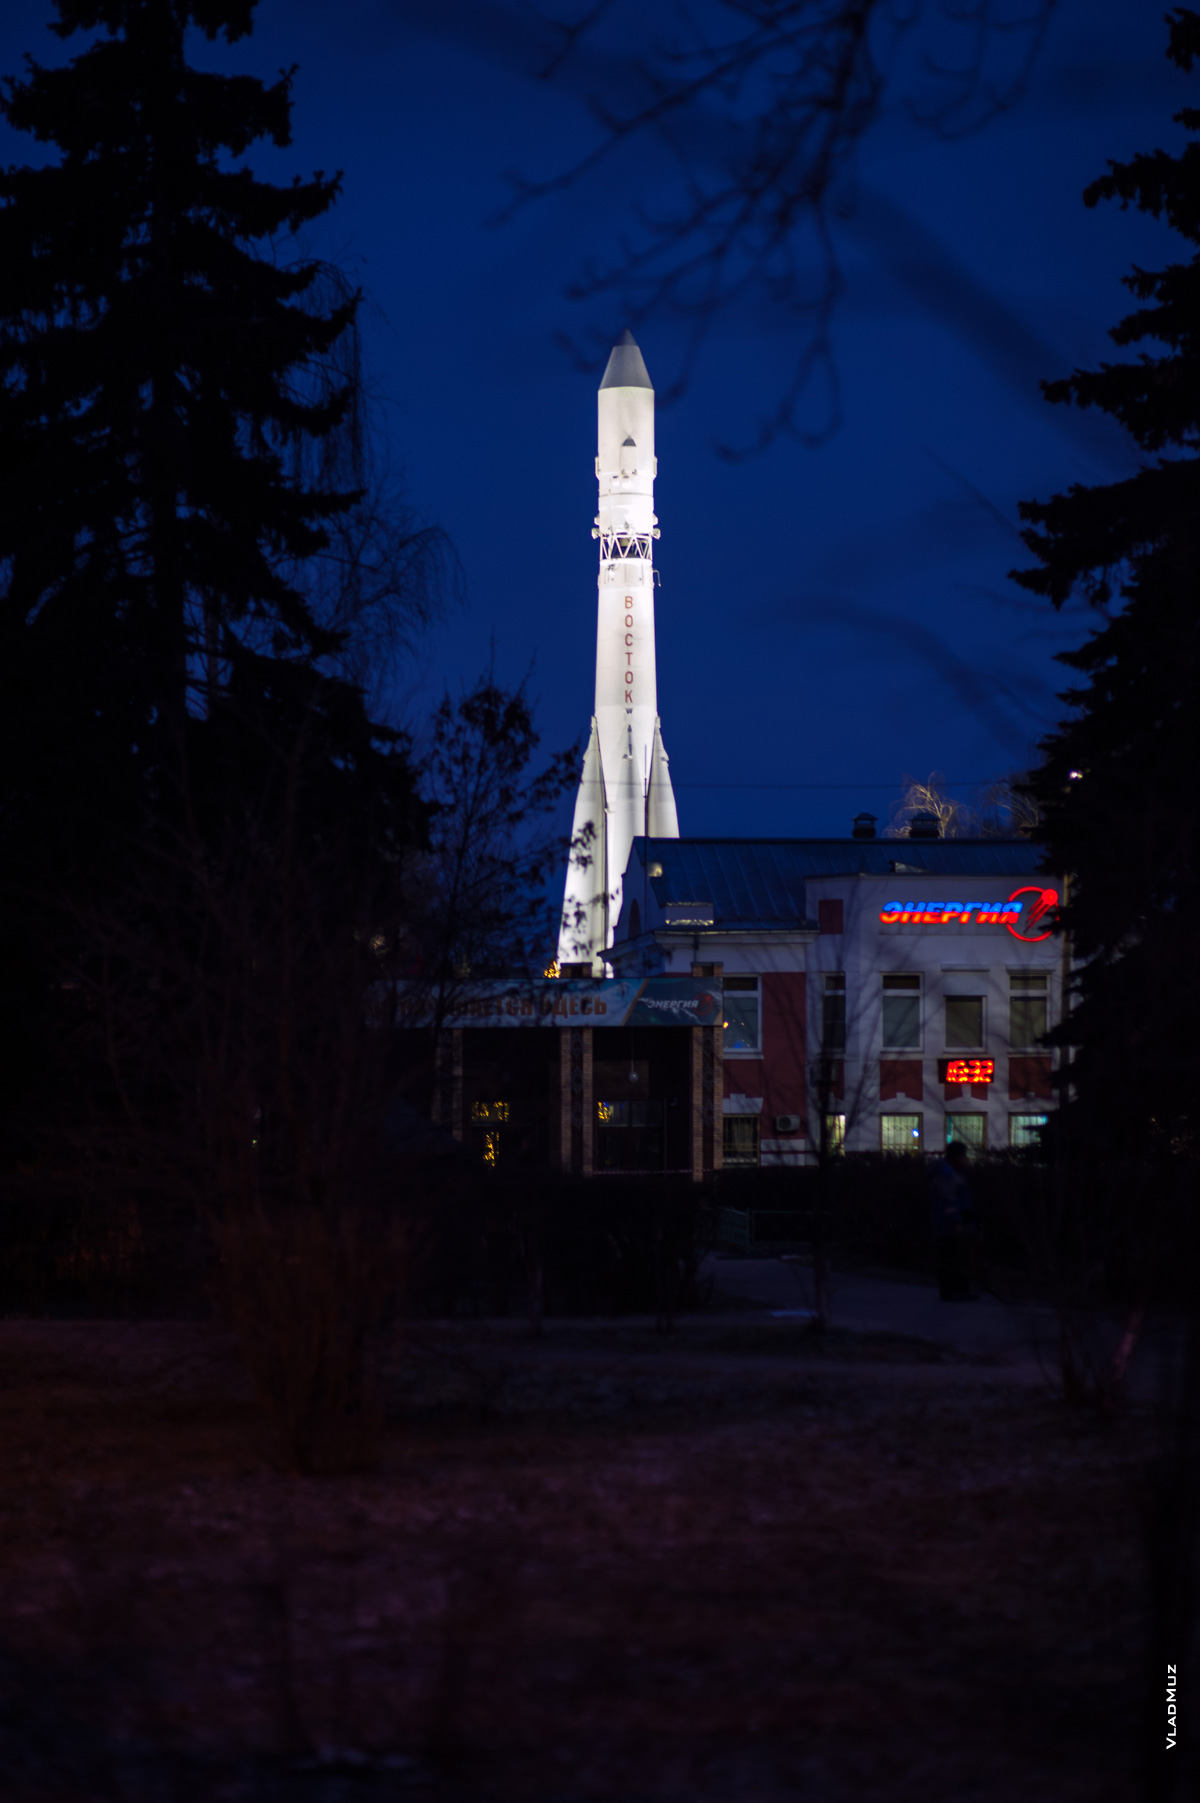 Ночное красивое фото ракеты «Восток» с подсветкой на территории РКК «Энергия» в Королёве